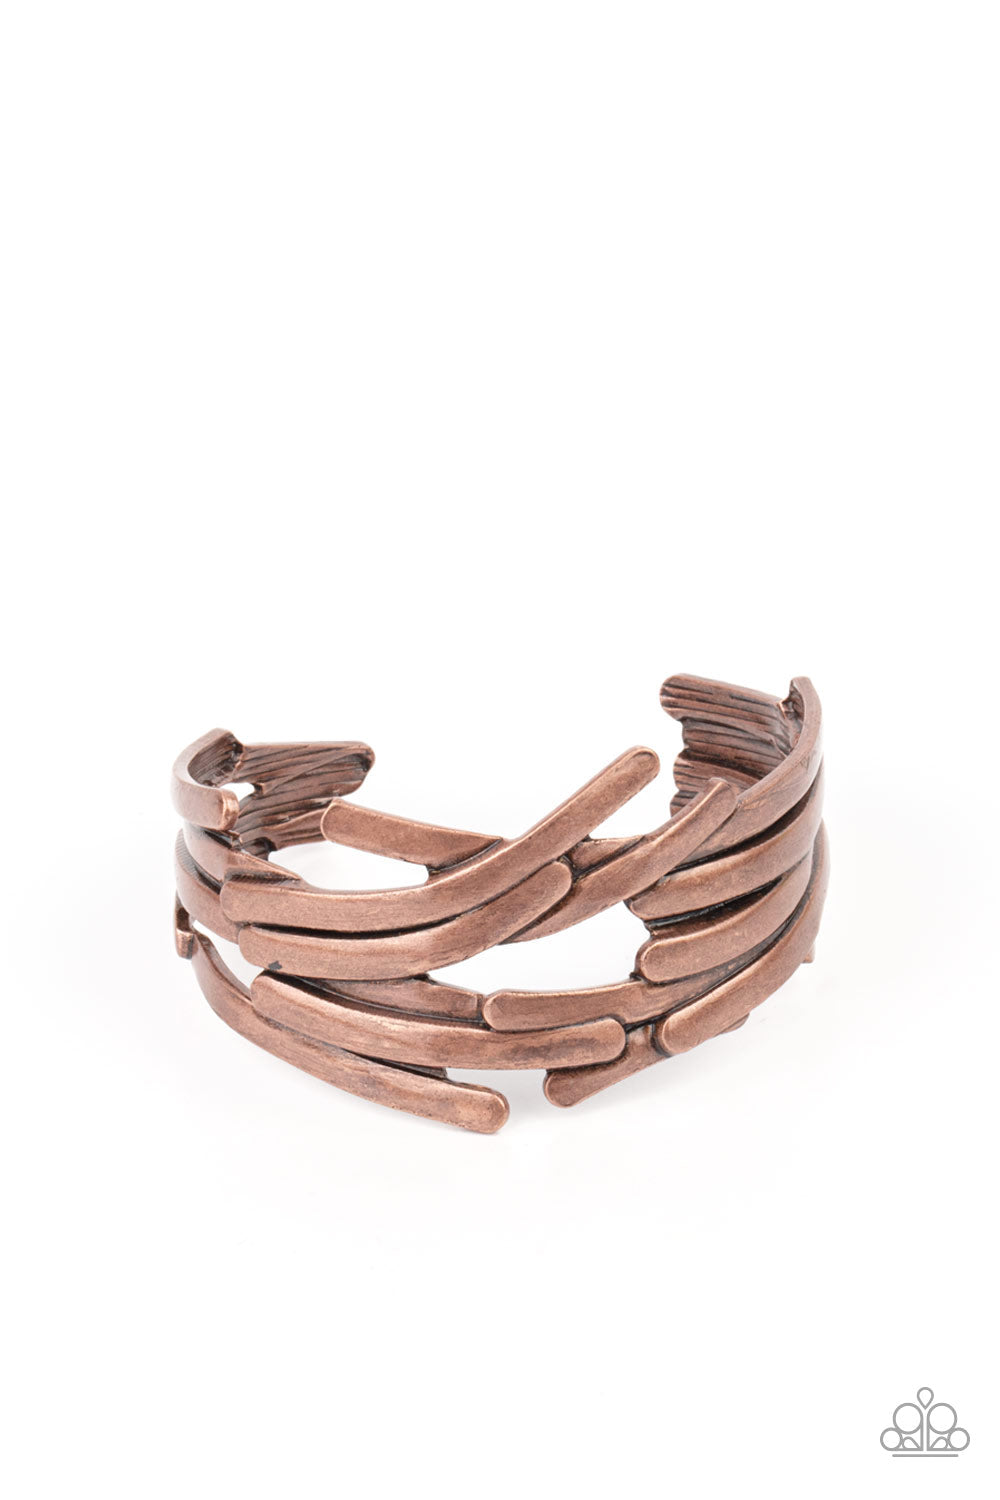 Stockpiled Style Copper Bracelet